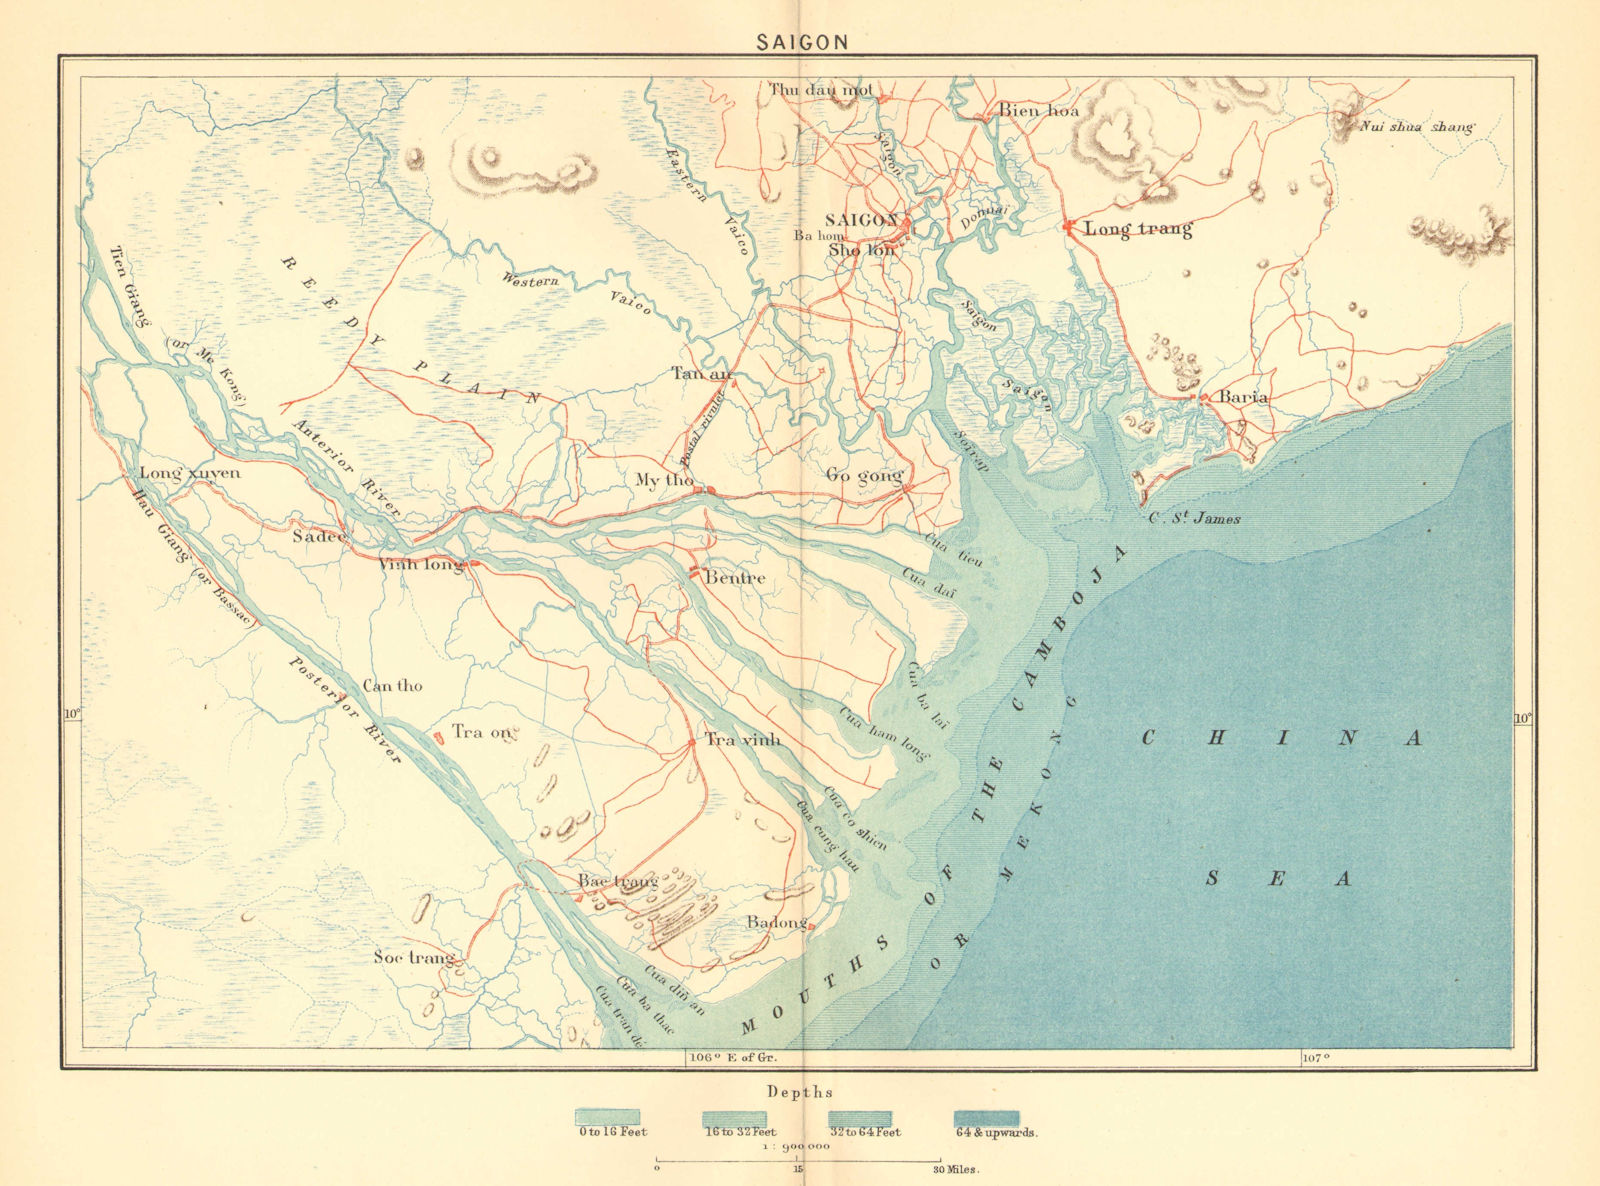 VIETNAM. Saigon c1885 old antique vintage map plan chart